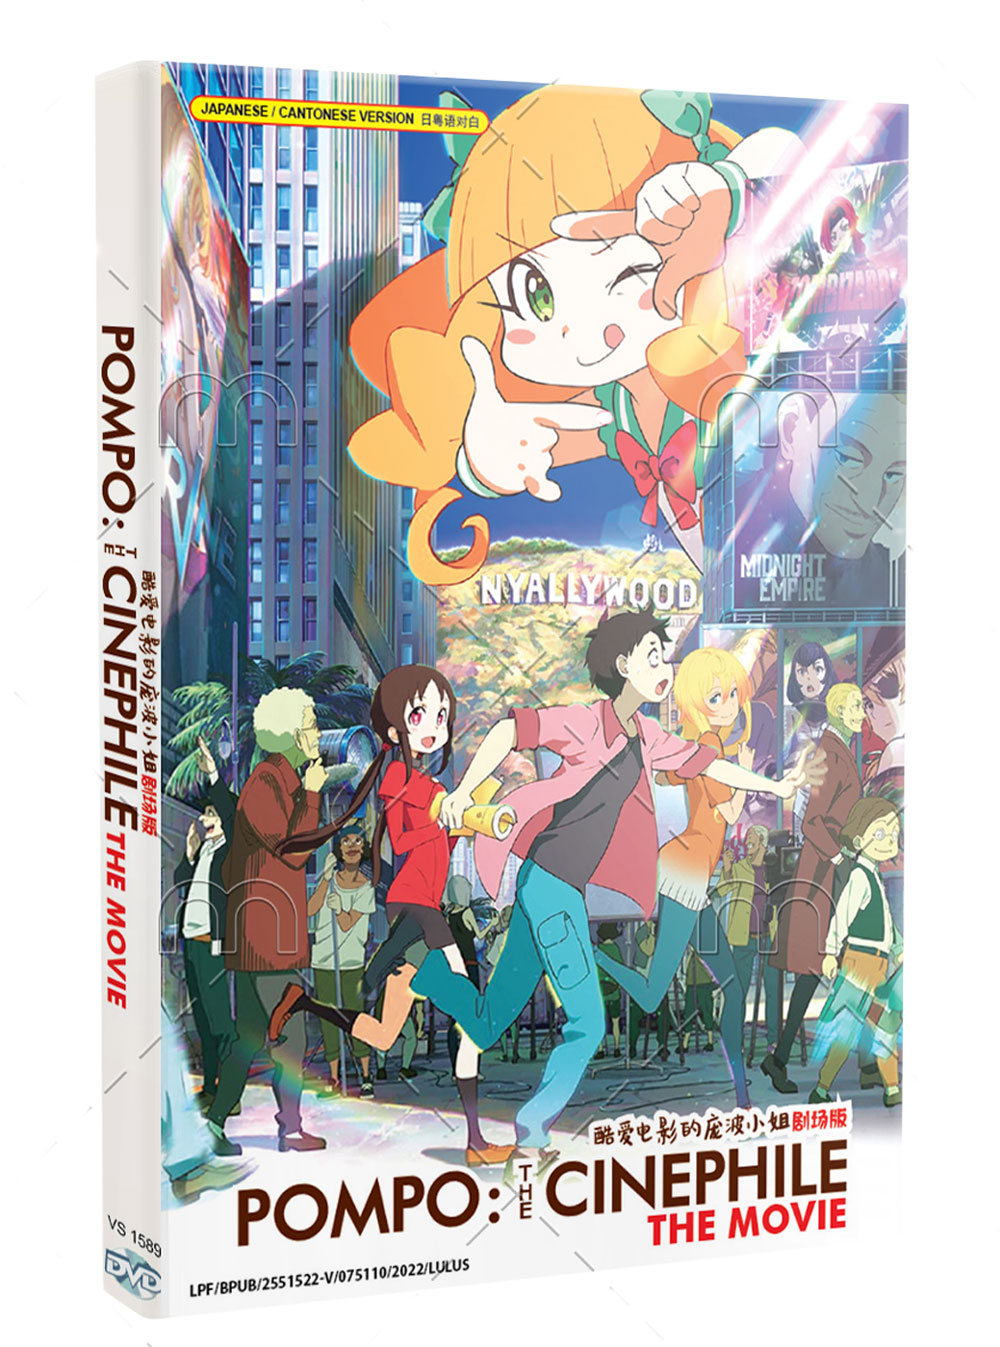 Pompo: The Cinephile (DVD) (2021) Anime